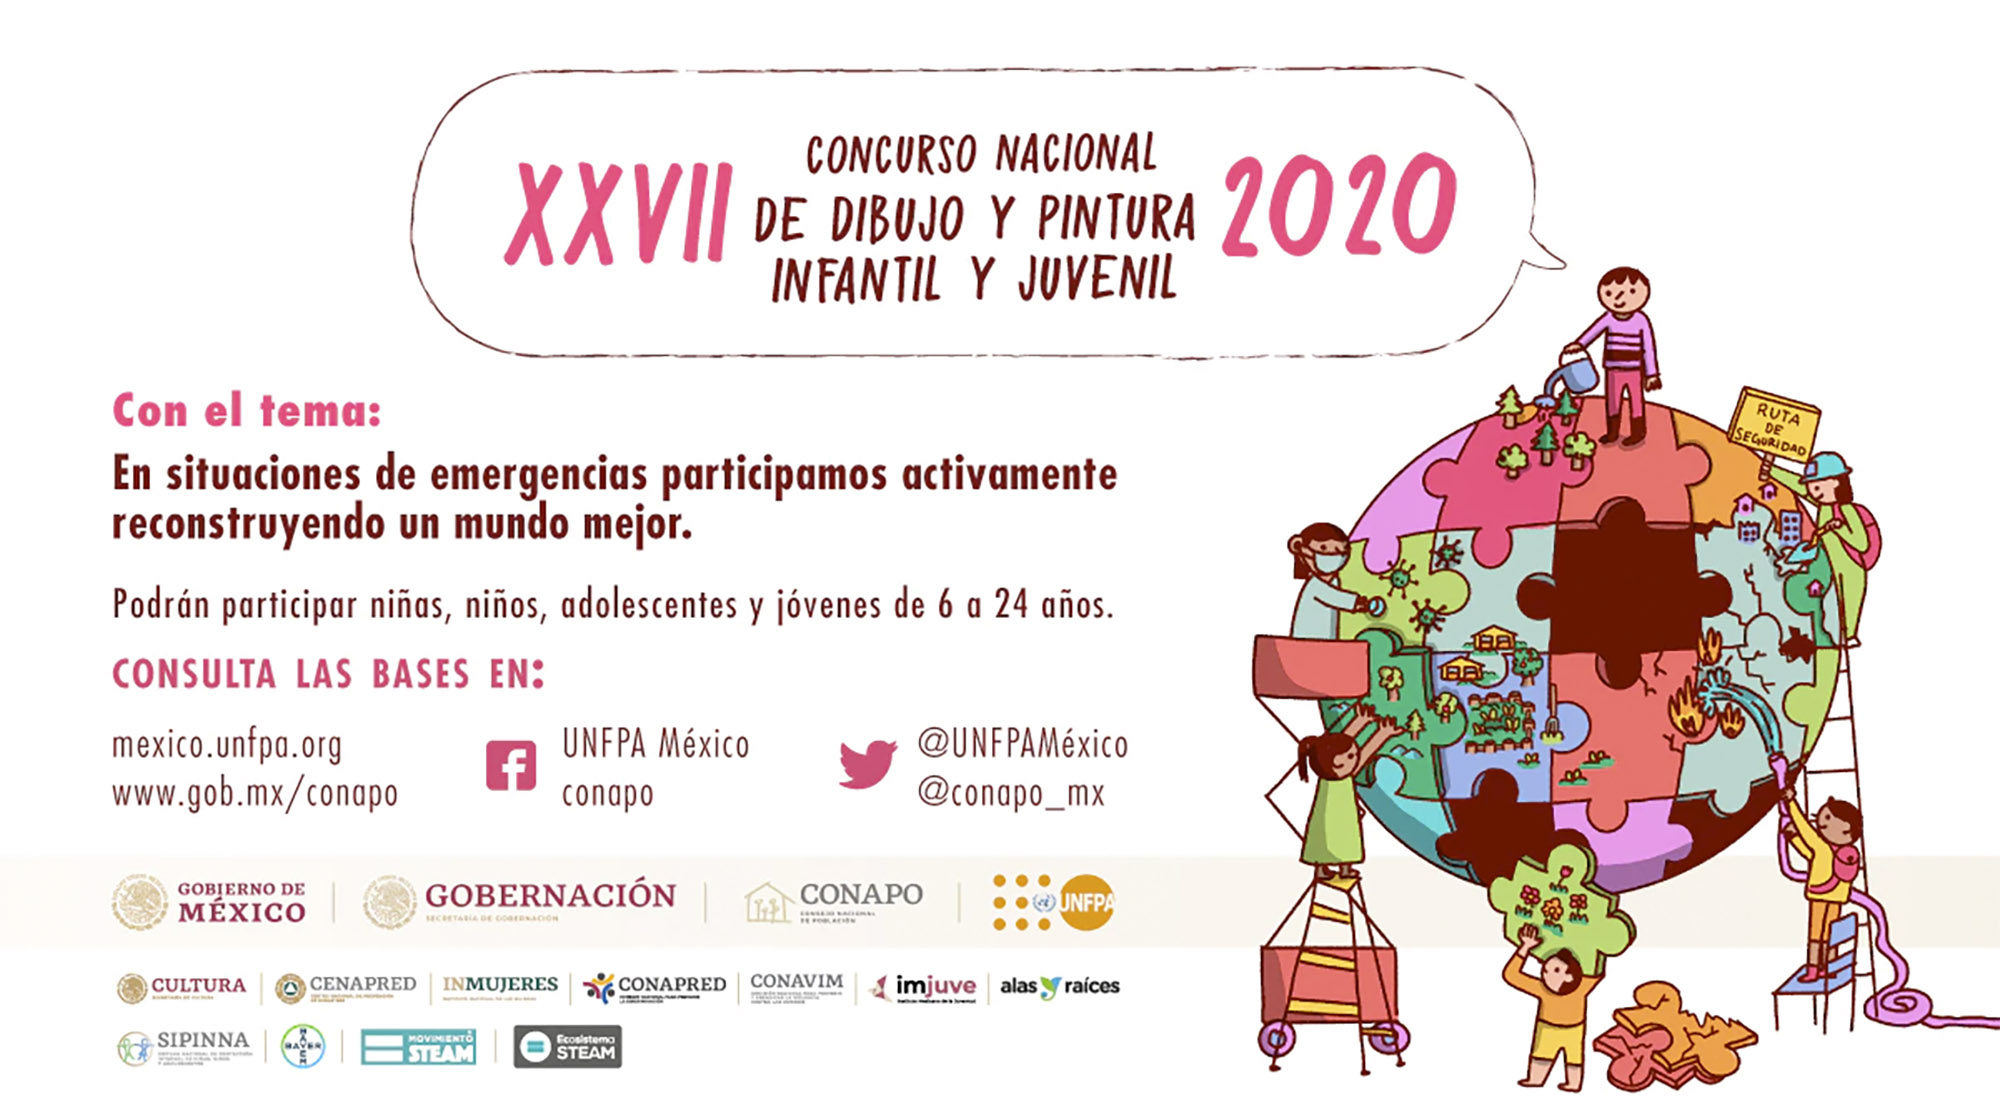 Concurso Nacional de Dibujo y Pintura Infantil y Juvenil 2020